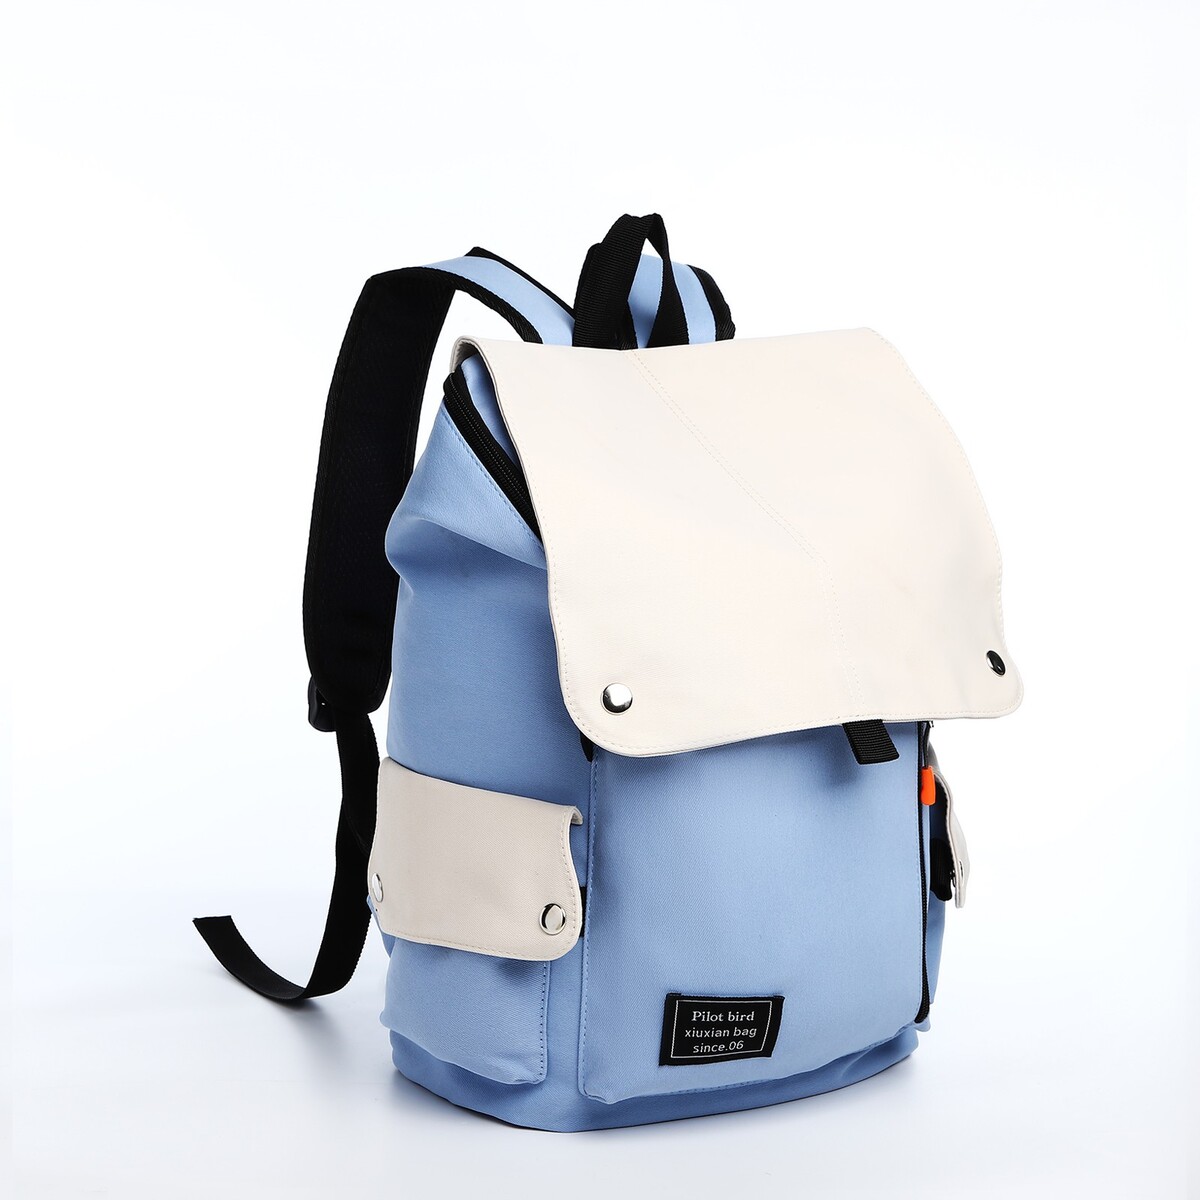 Рюкзак на молнии, 5 наружных кармана, цвет бежевый/голубой рюкзак молодежный из текстиля 3 кармана белый бежевый